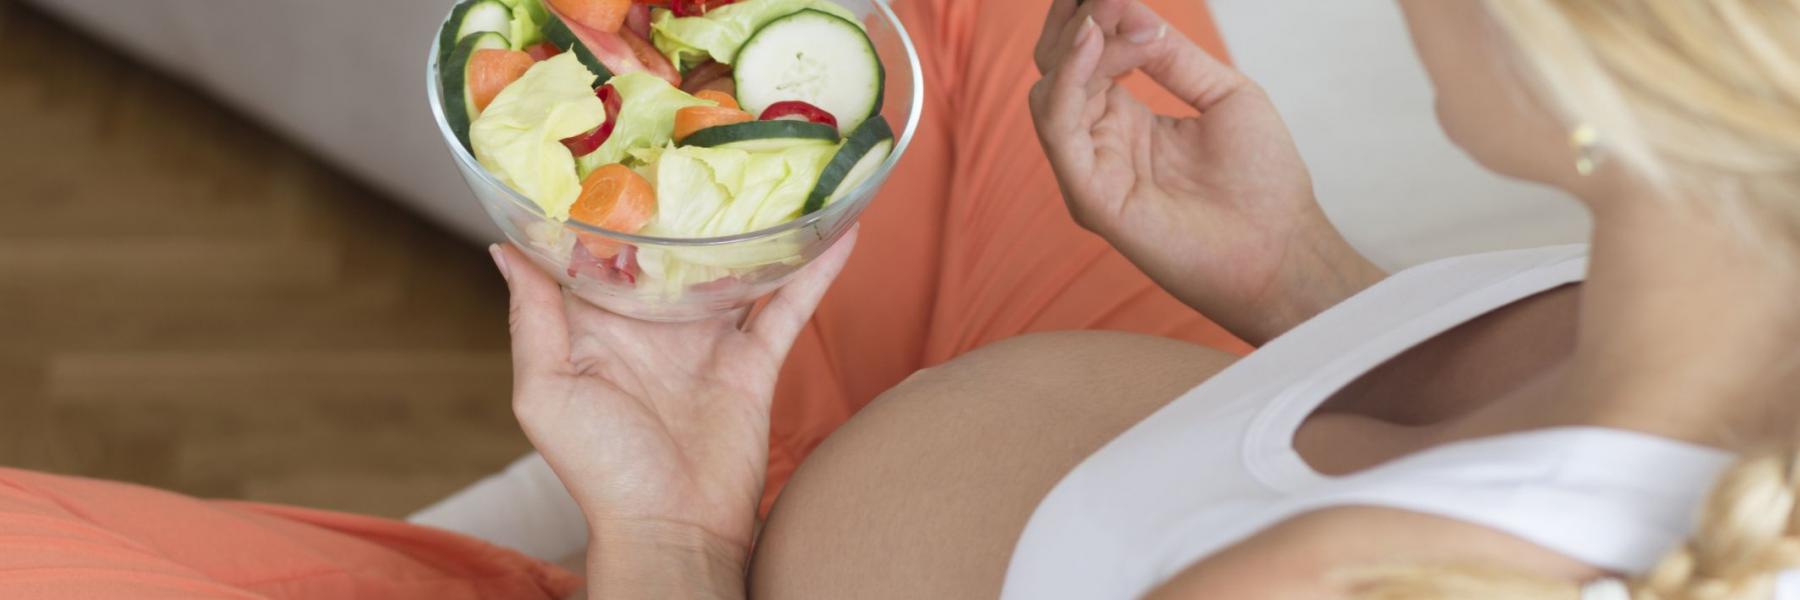 فوائد الخضروات للحامل والجنين